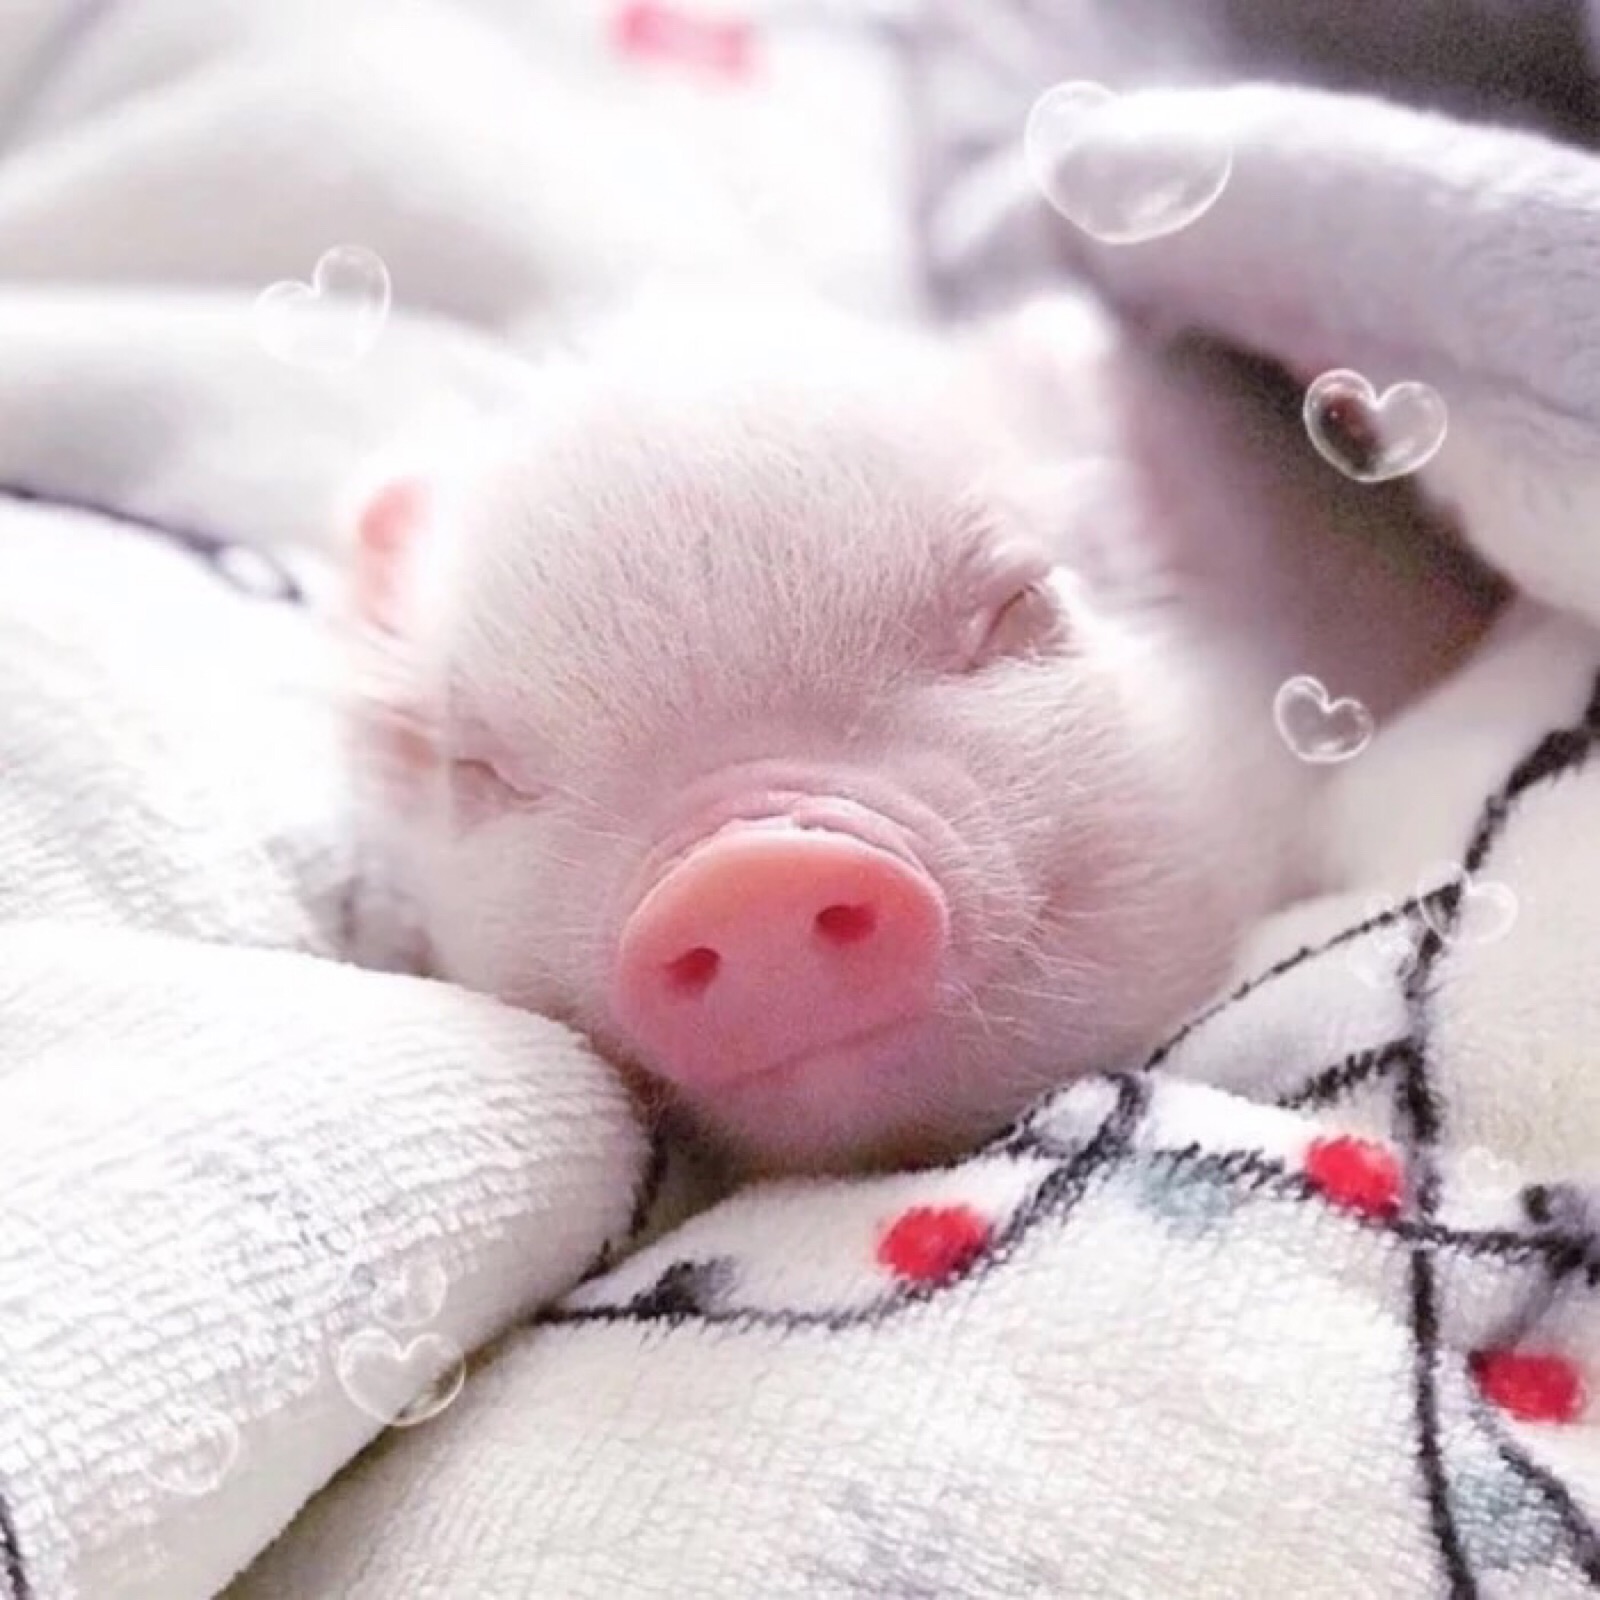 超级可爱的猪猪图像图片